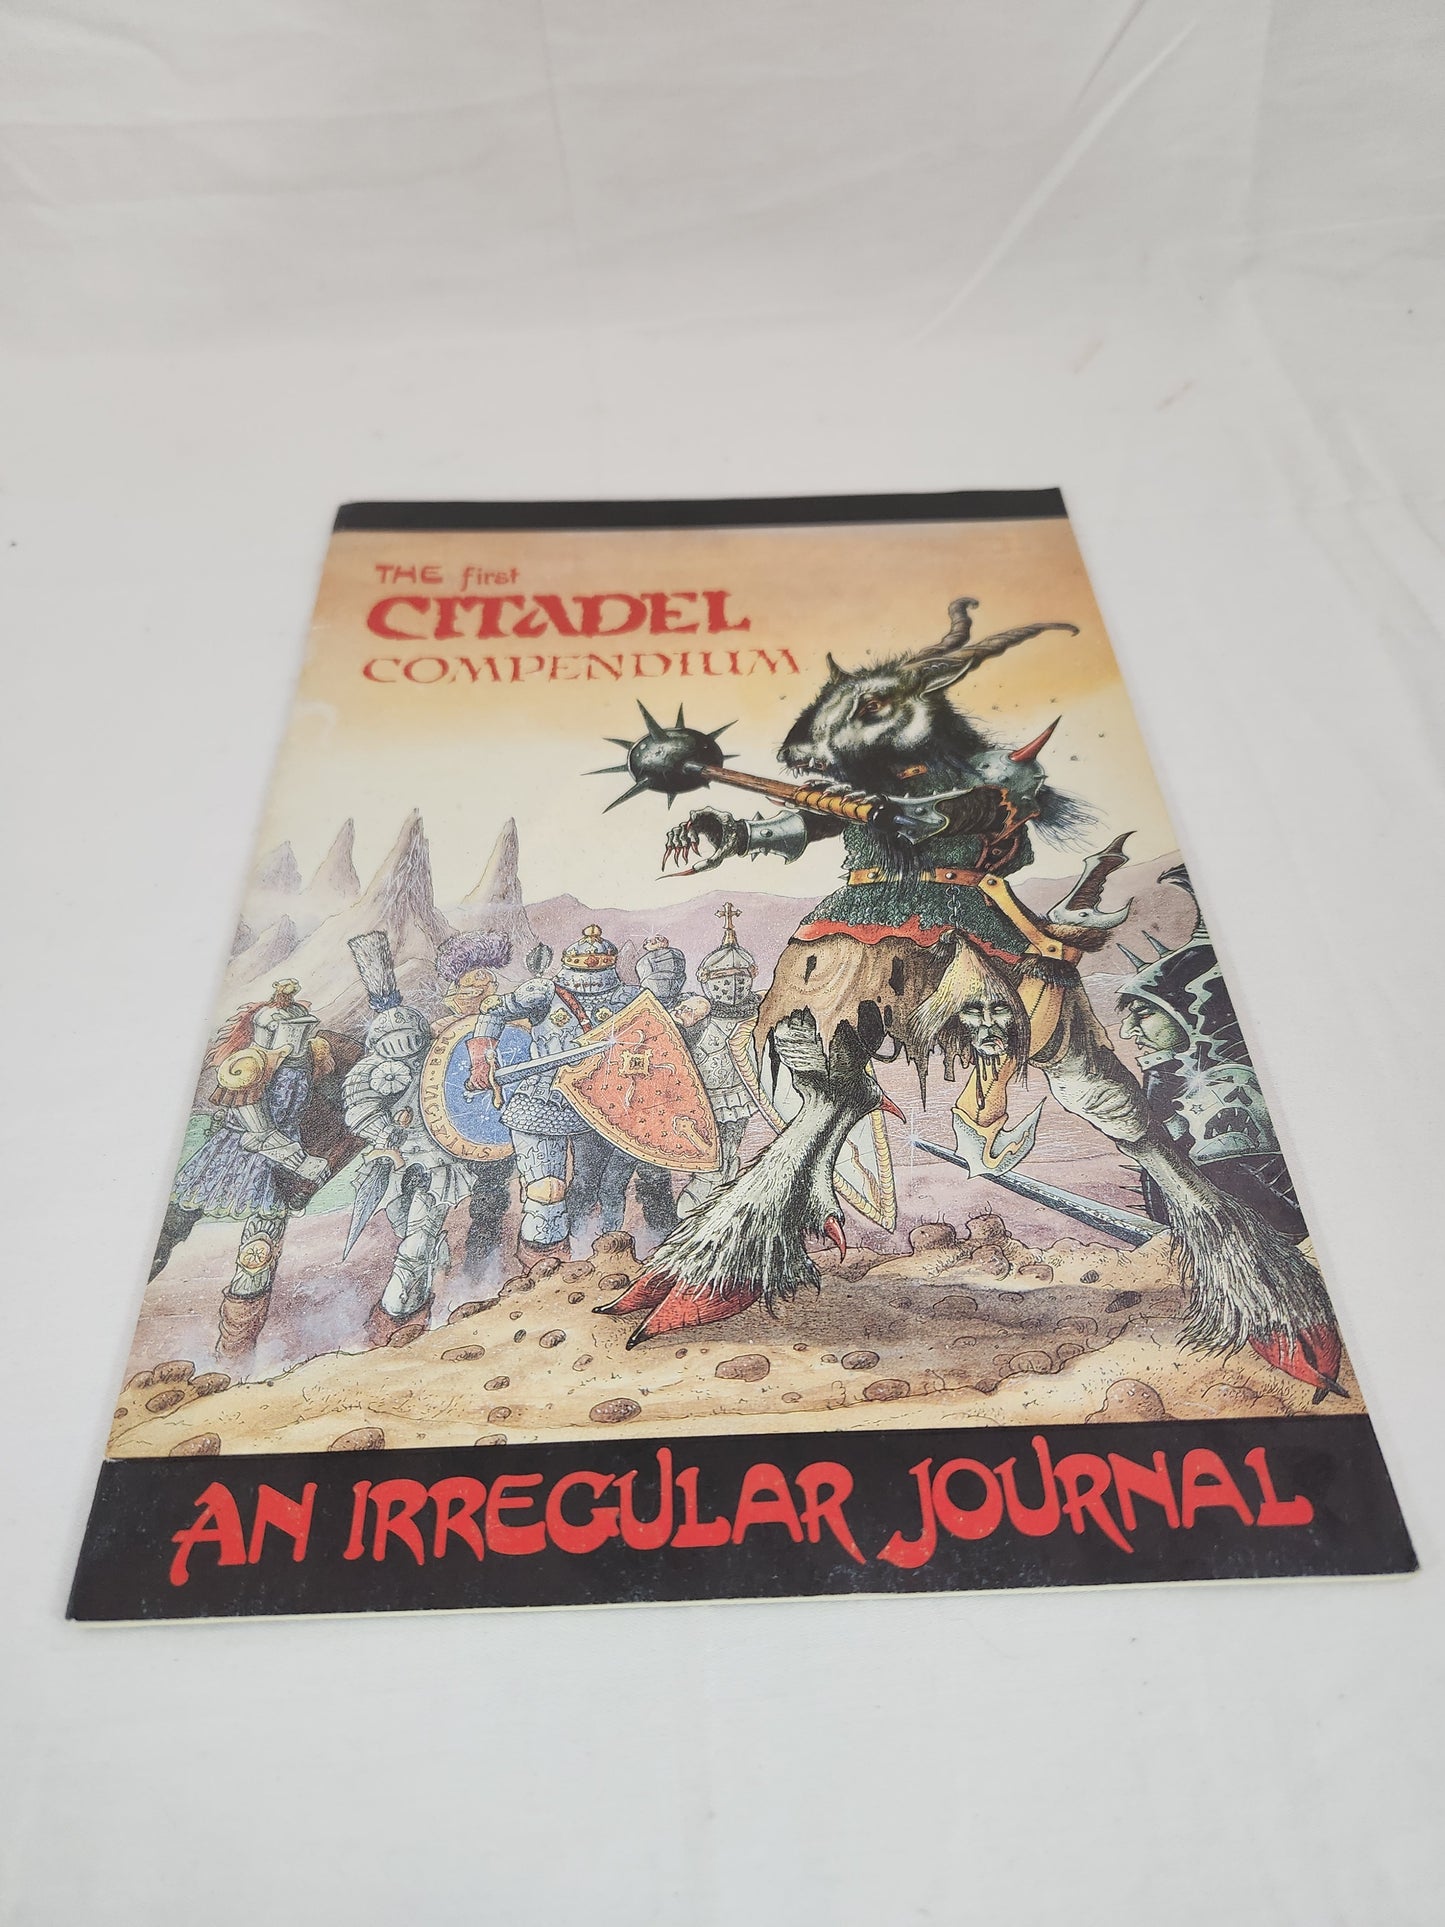 The First Citadel Compendium - An Irregular Journal - Fine condition